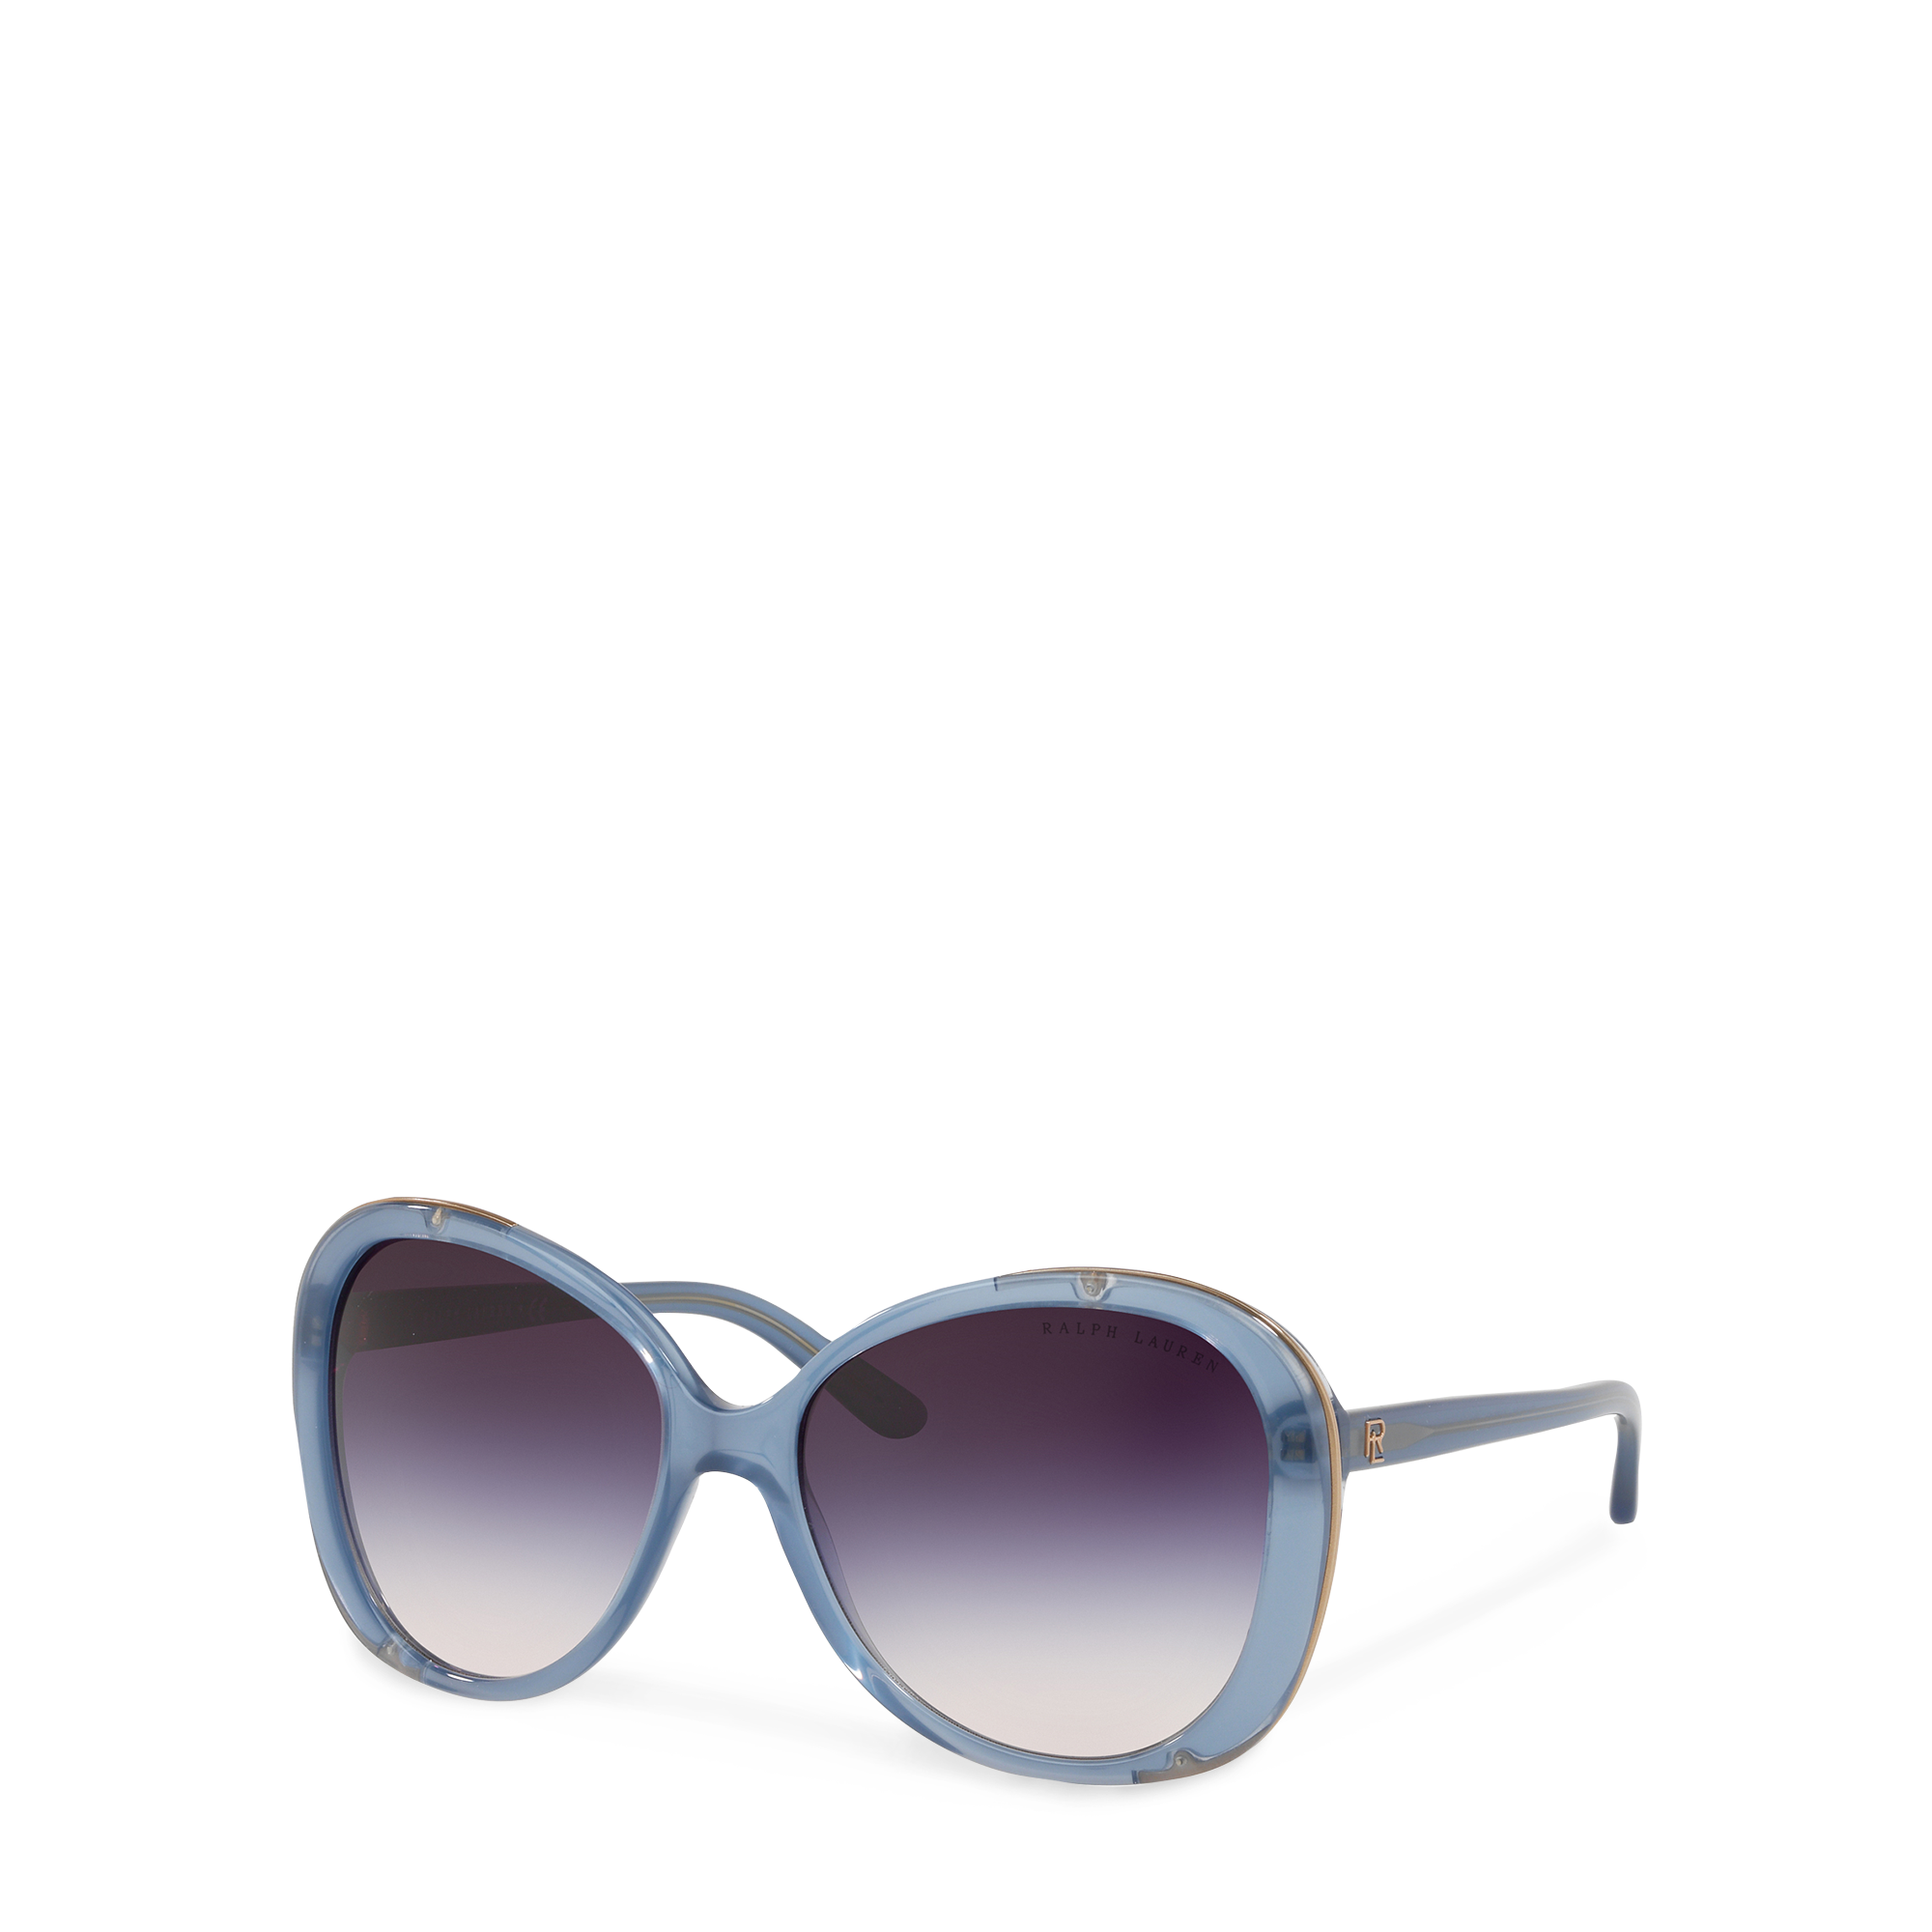 Ralph Lauren Butterfly Sunglasses. 2